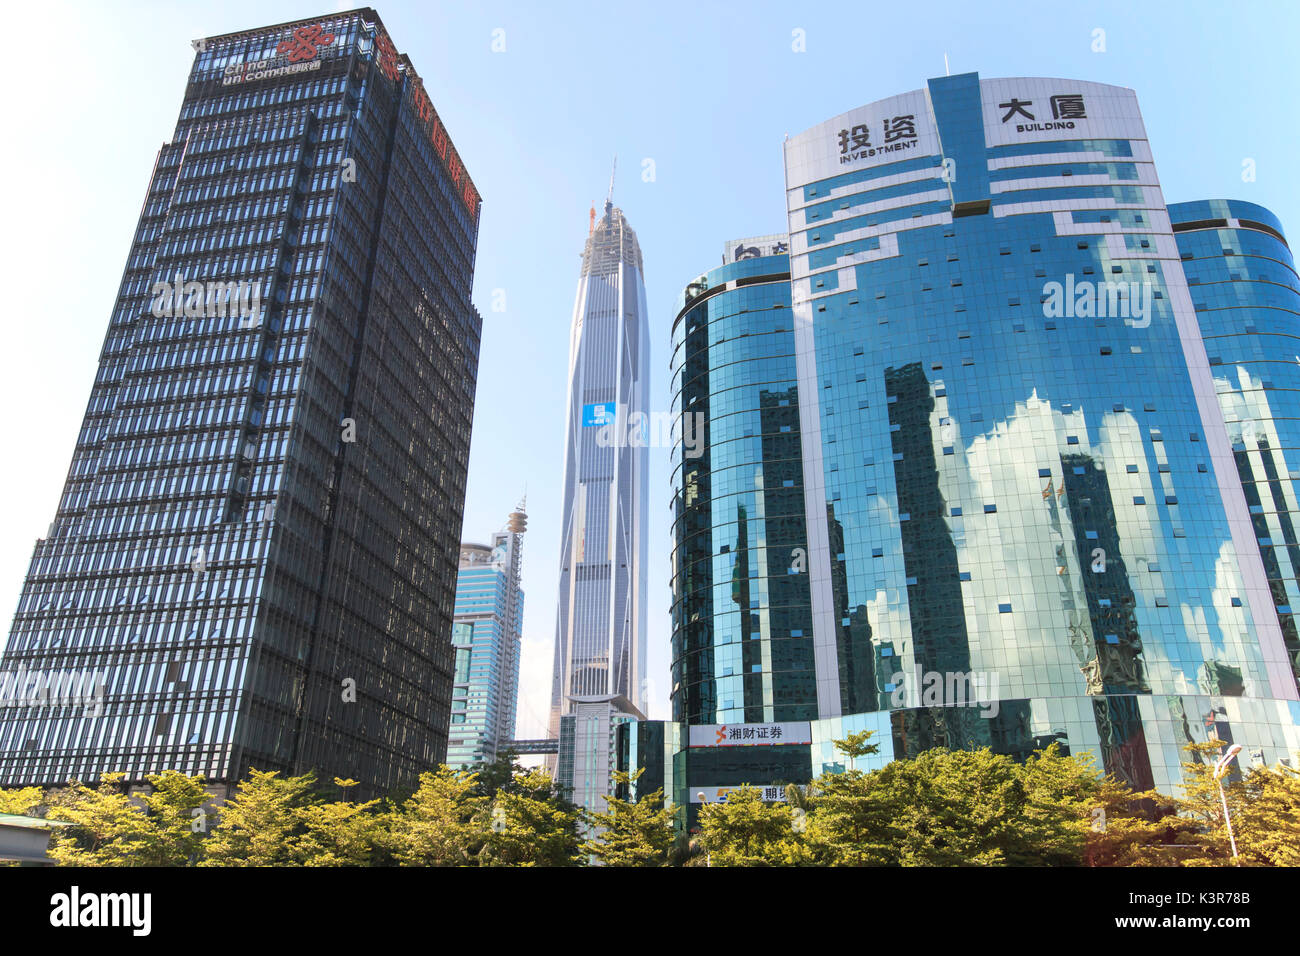 Lo skyline di Shenzhen come visto dal palazzo della Borsa con il Ping Un IFC, il più alto edificio della città, su sfondo, Cina Foto Stock